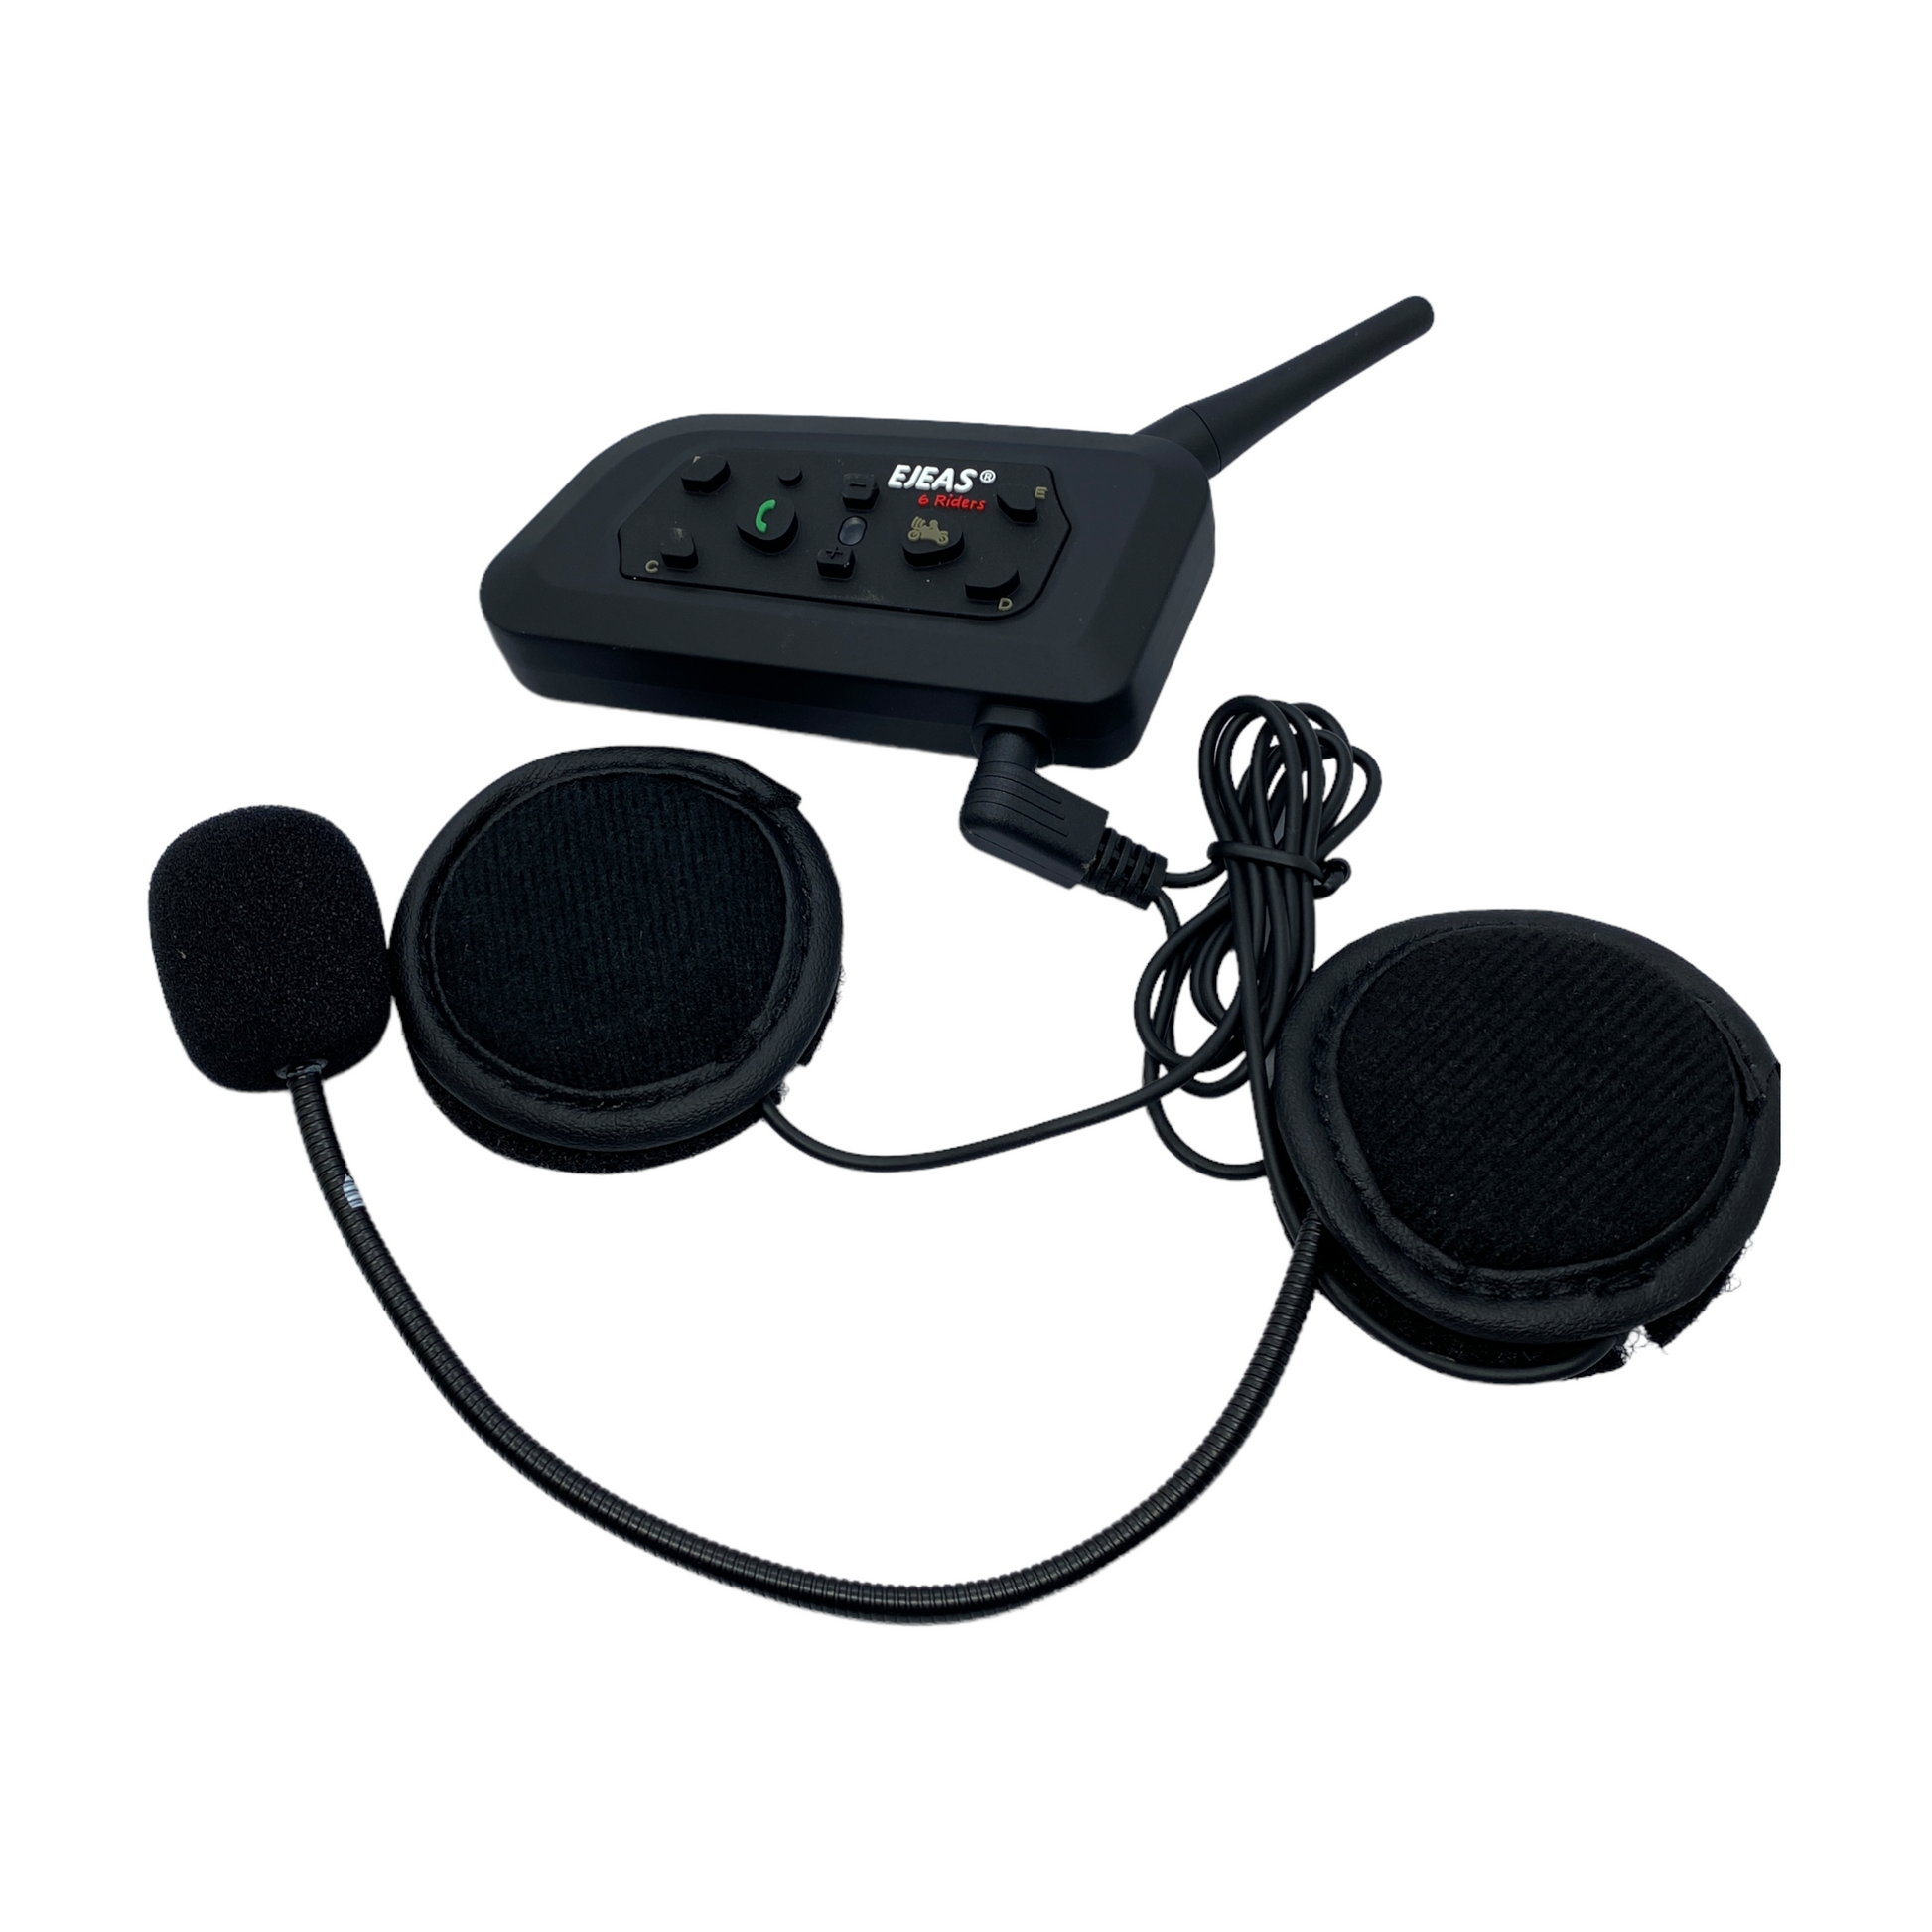 Intercomunicador Bluetooth Auricular Ejeas 2 Pcs V6 Pro Intercomunicador  Casco De Motocicleta I Oechsle - Oechsle